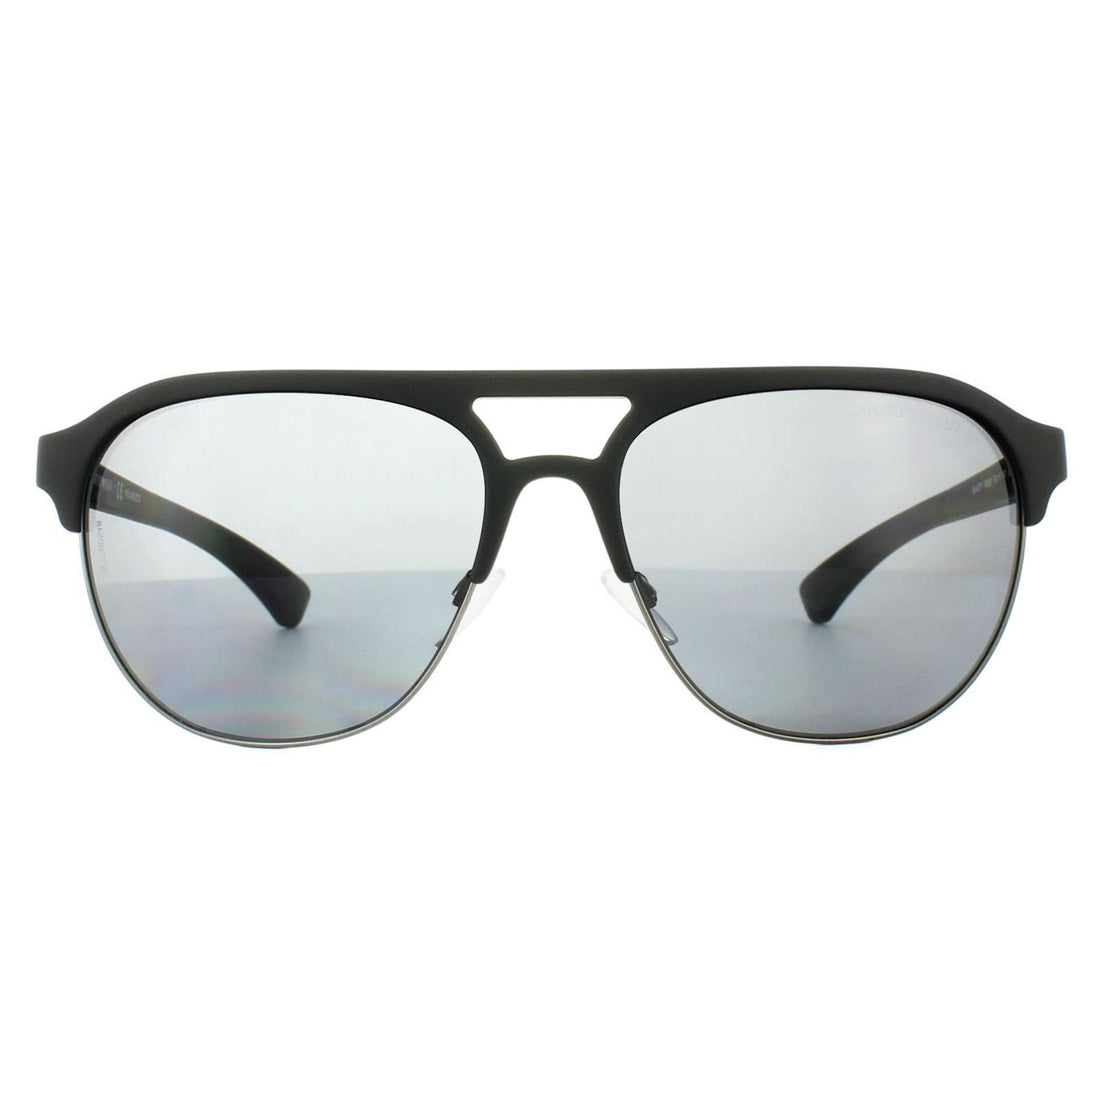 Emporio Armani Sunglasses 4077 5063/81 Black Rubber Grey Polarized